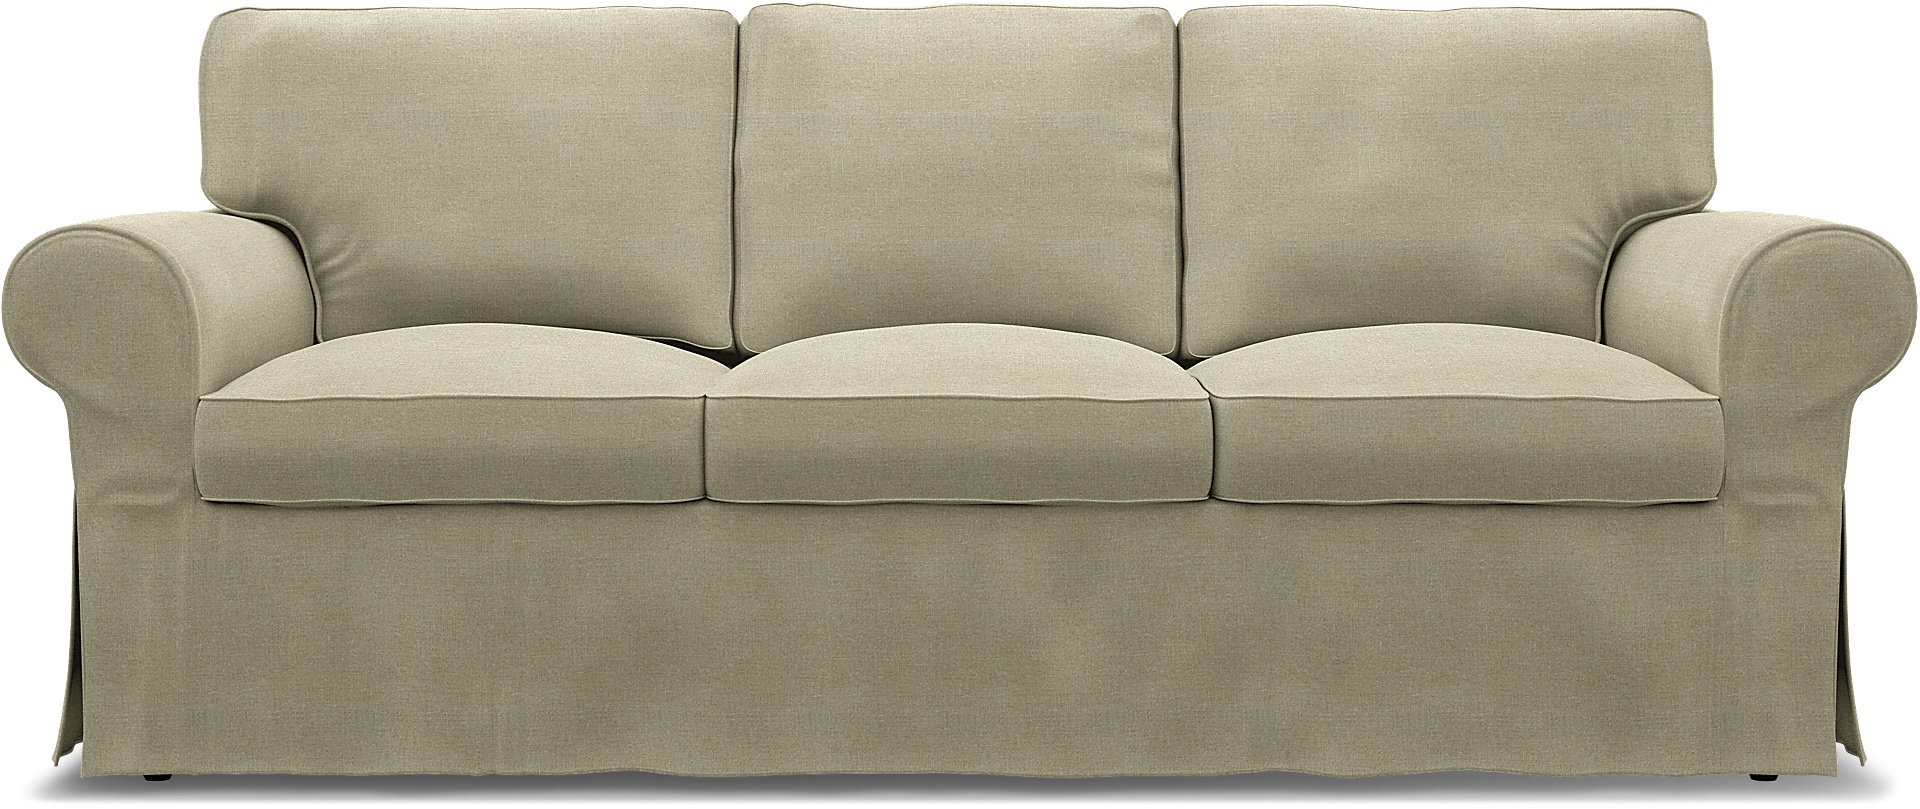 IKEA - Ektorp 3 Seater Sofa Cover, Pebble, Linen - Bemz